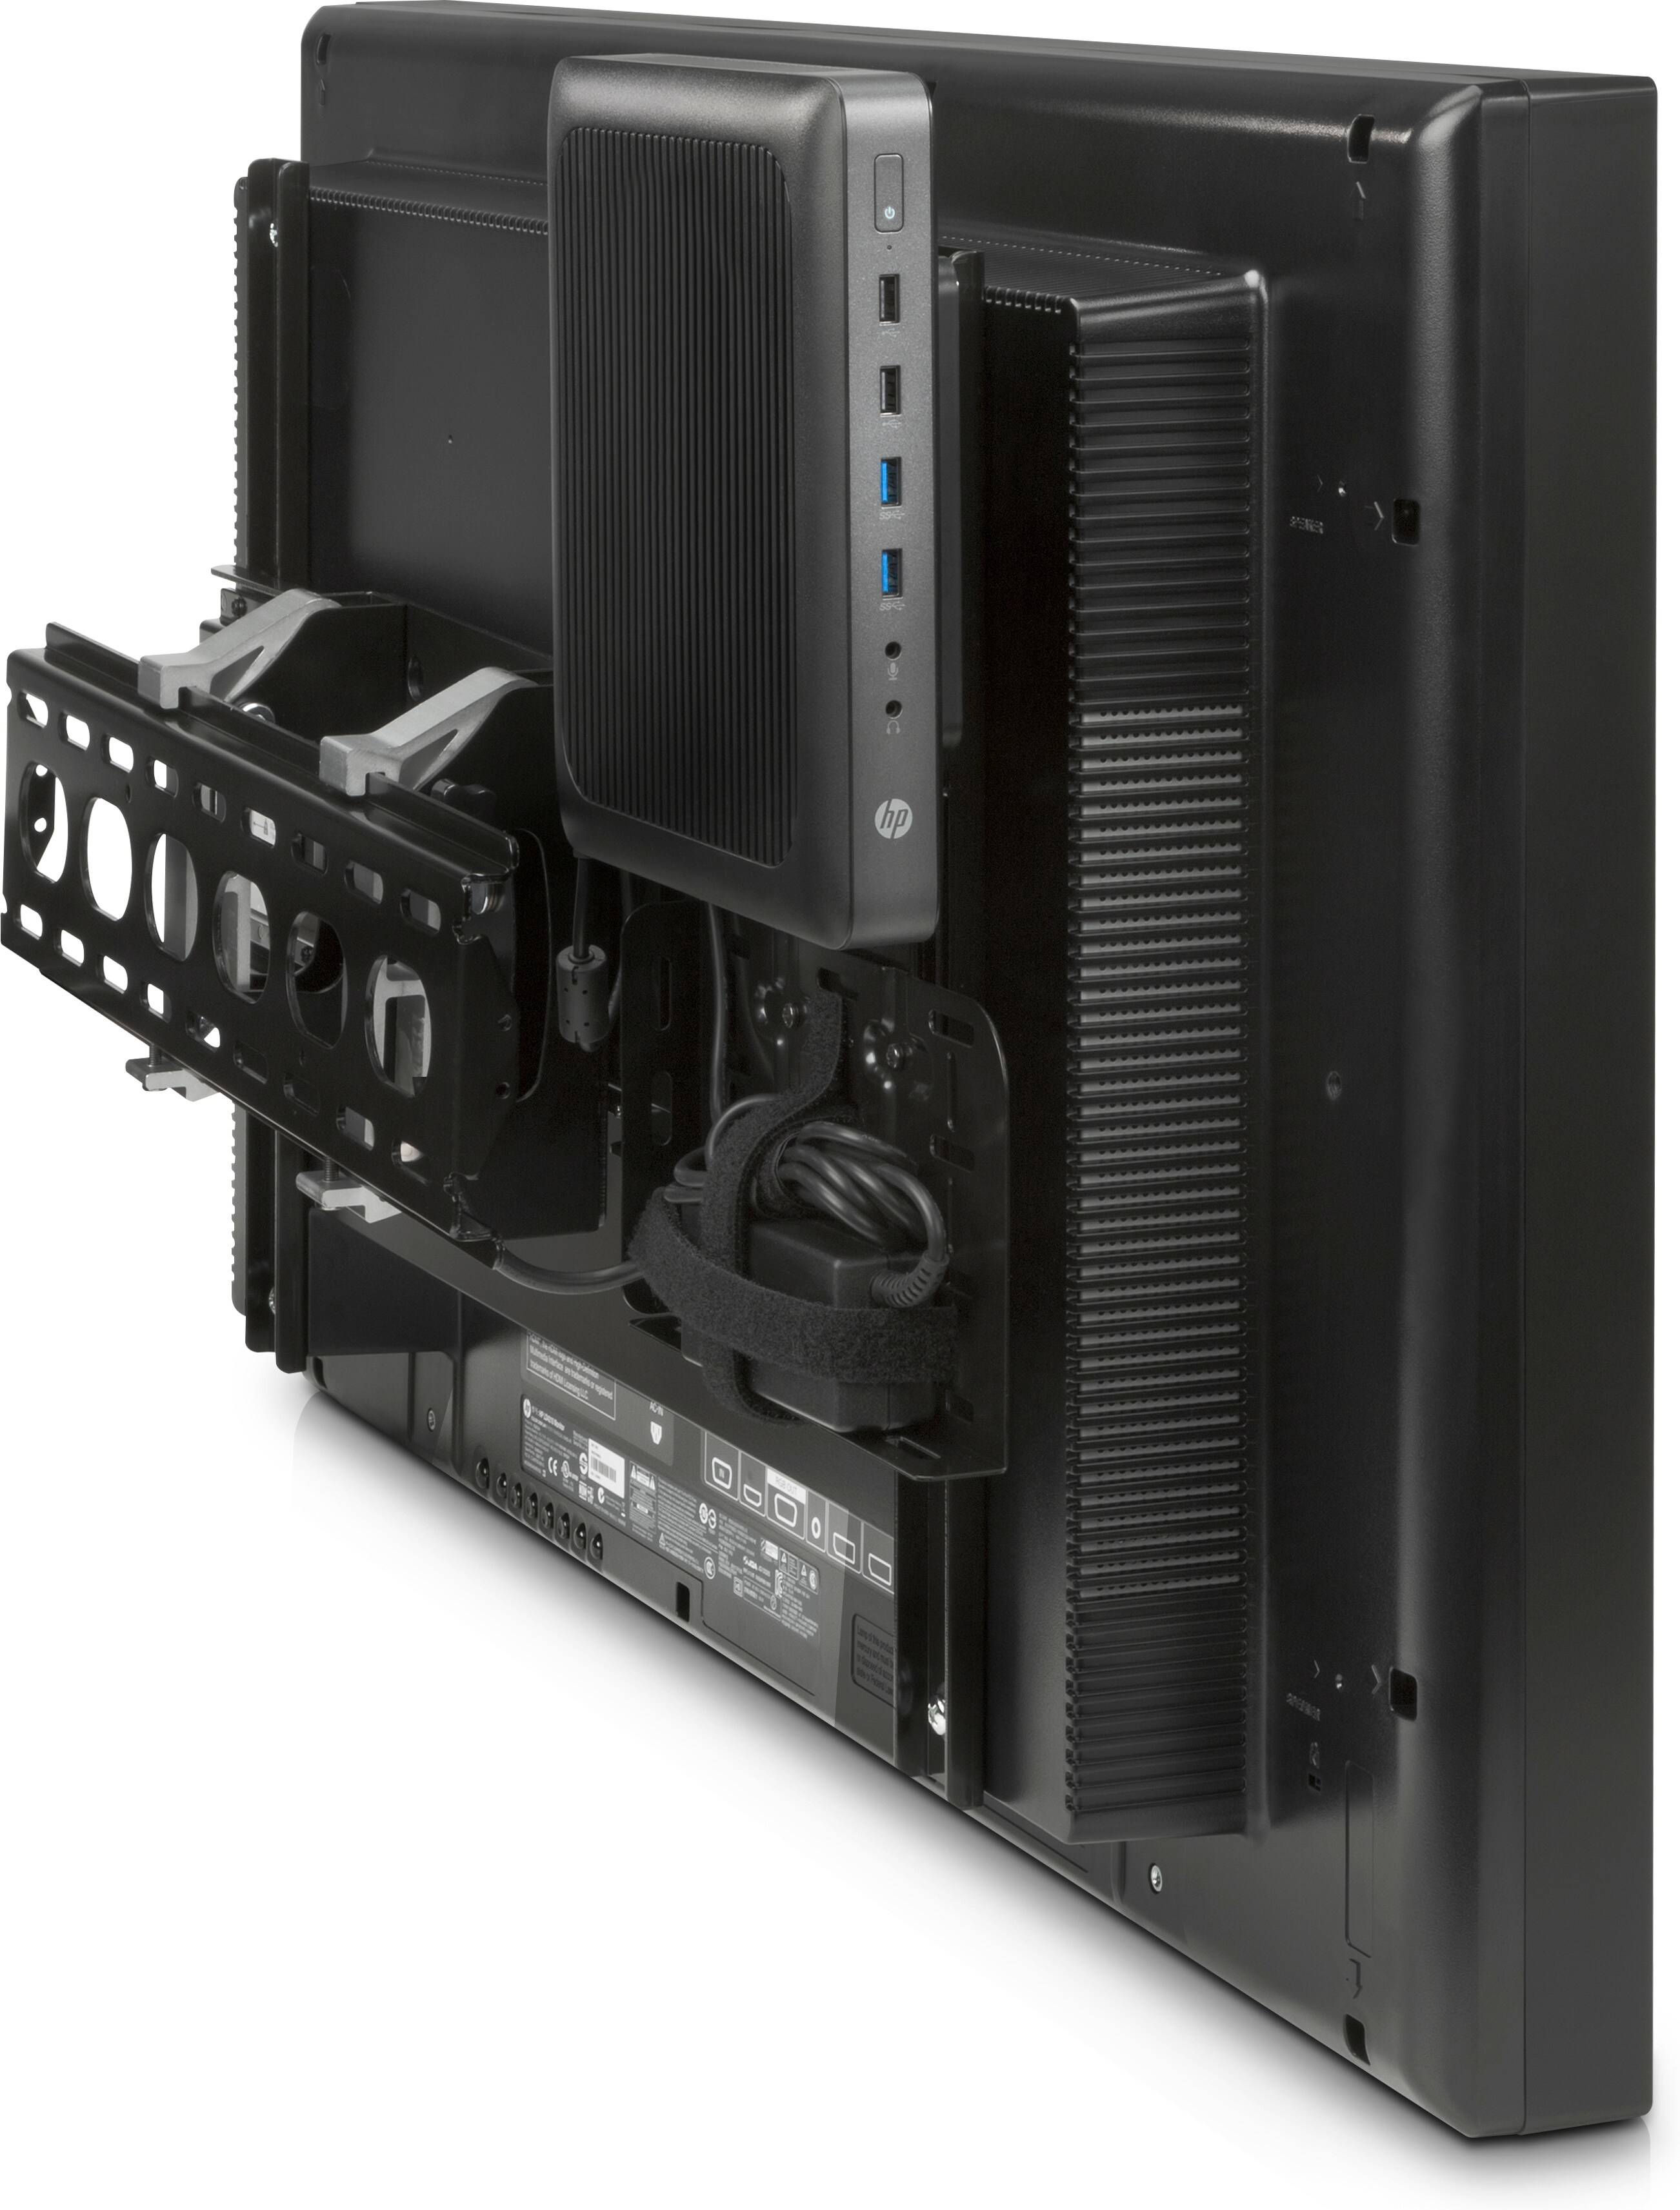 Rca Informatique - Image du produit : HP DSD SECURITY WALL MOUNT .